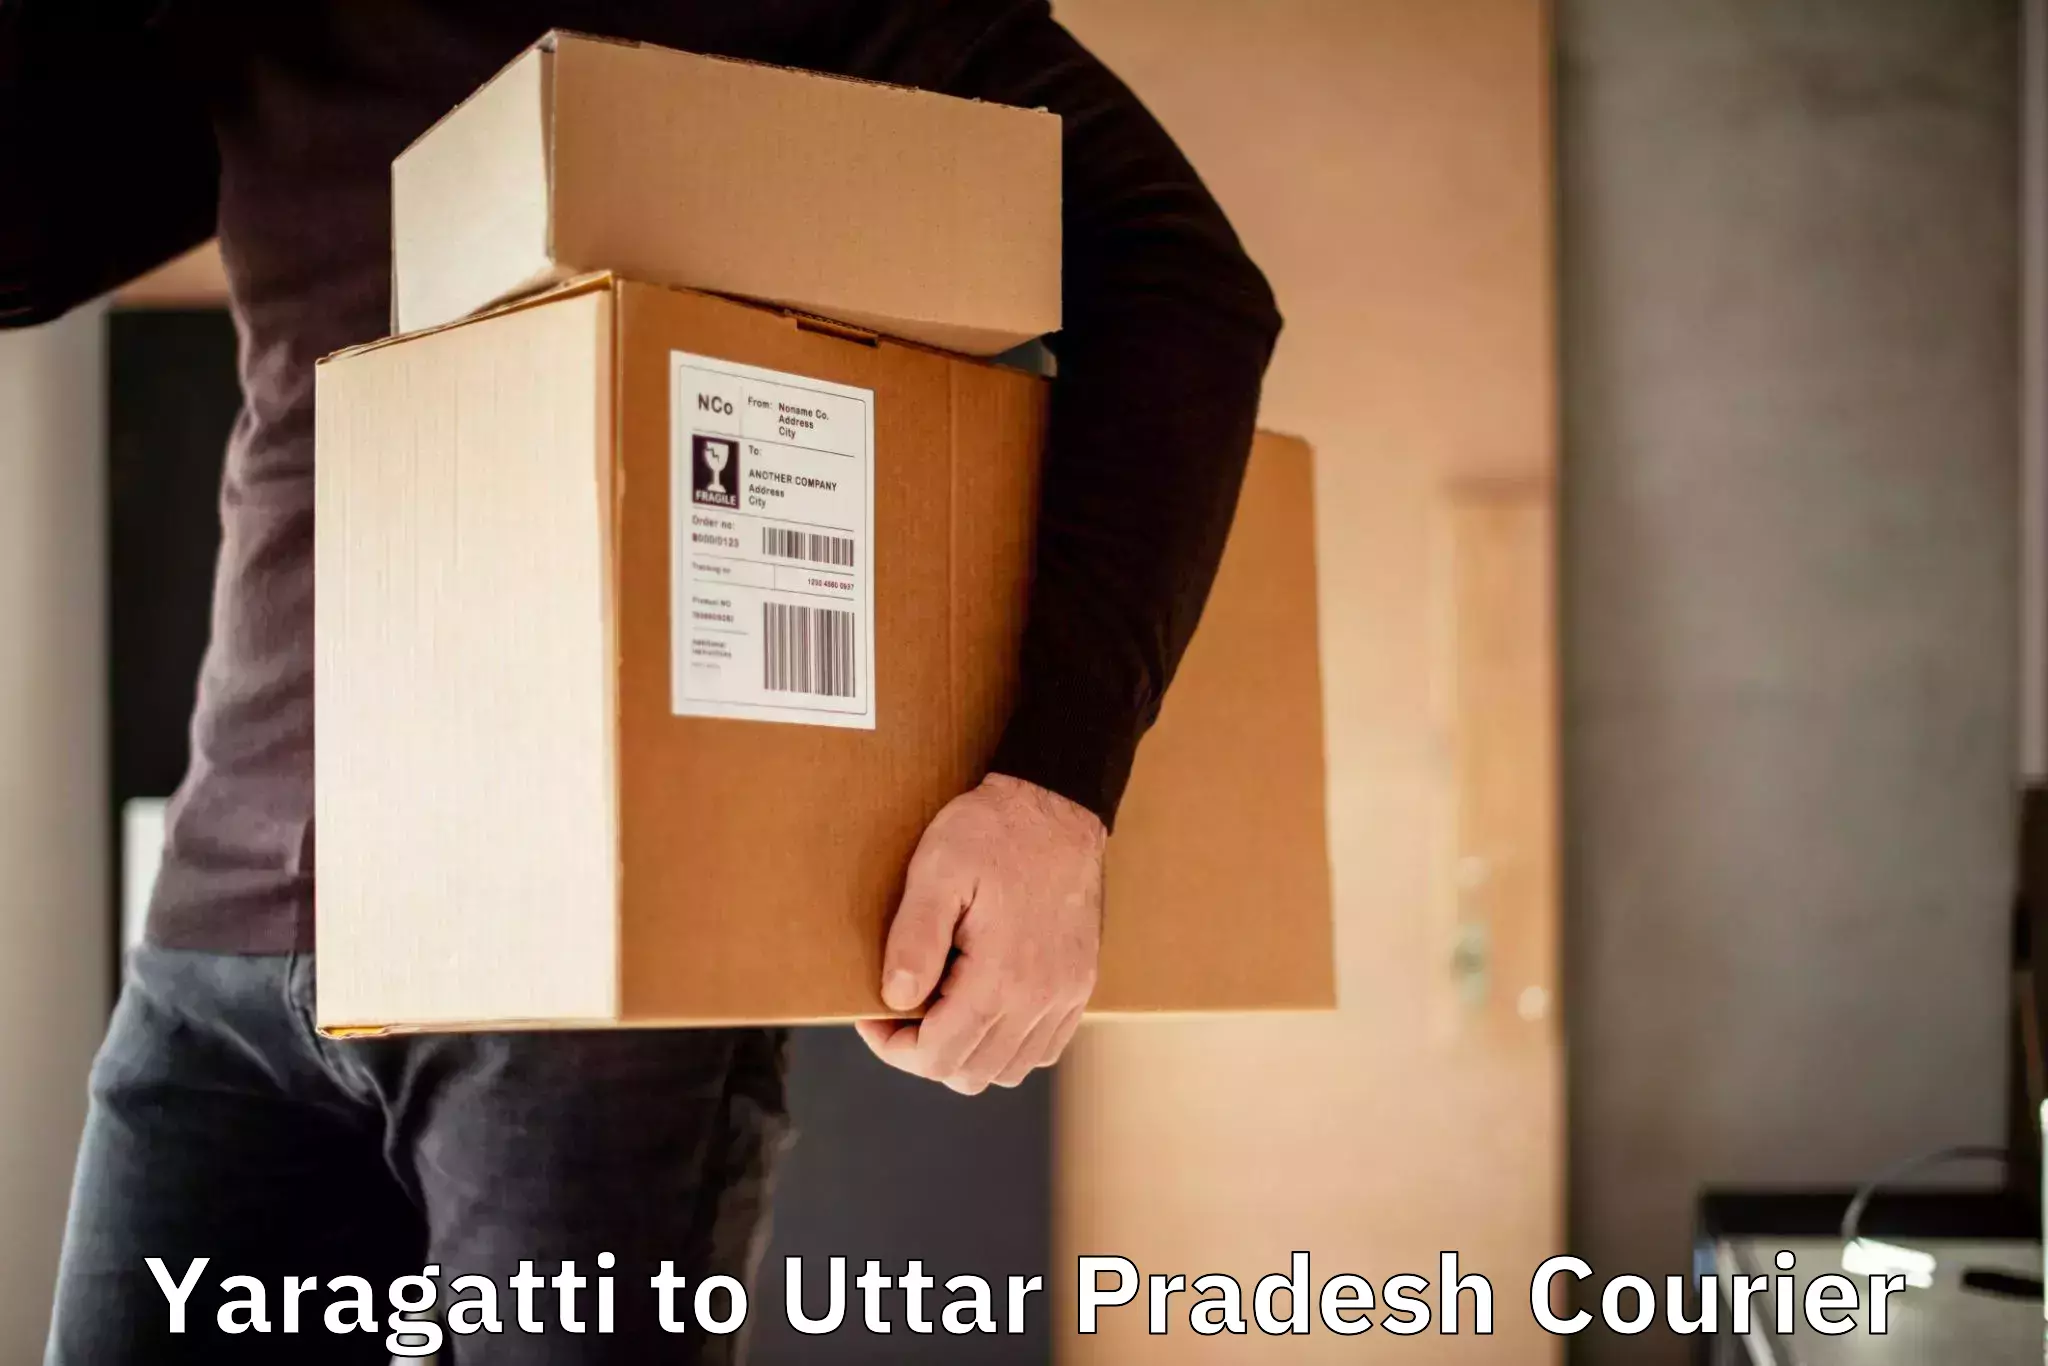 Specialized shipment handling Yaragatti to Sewarhi